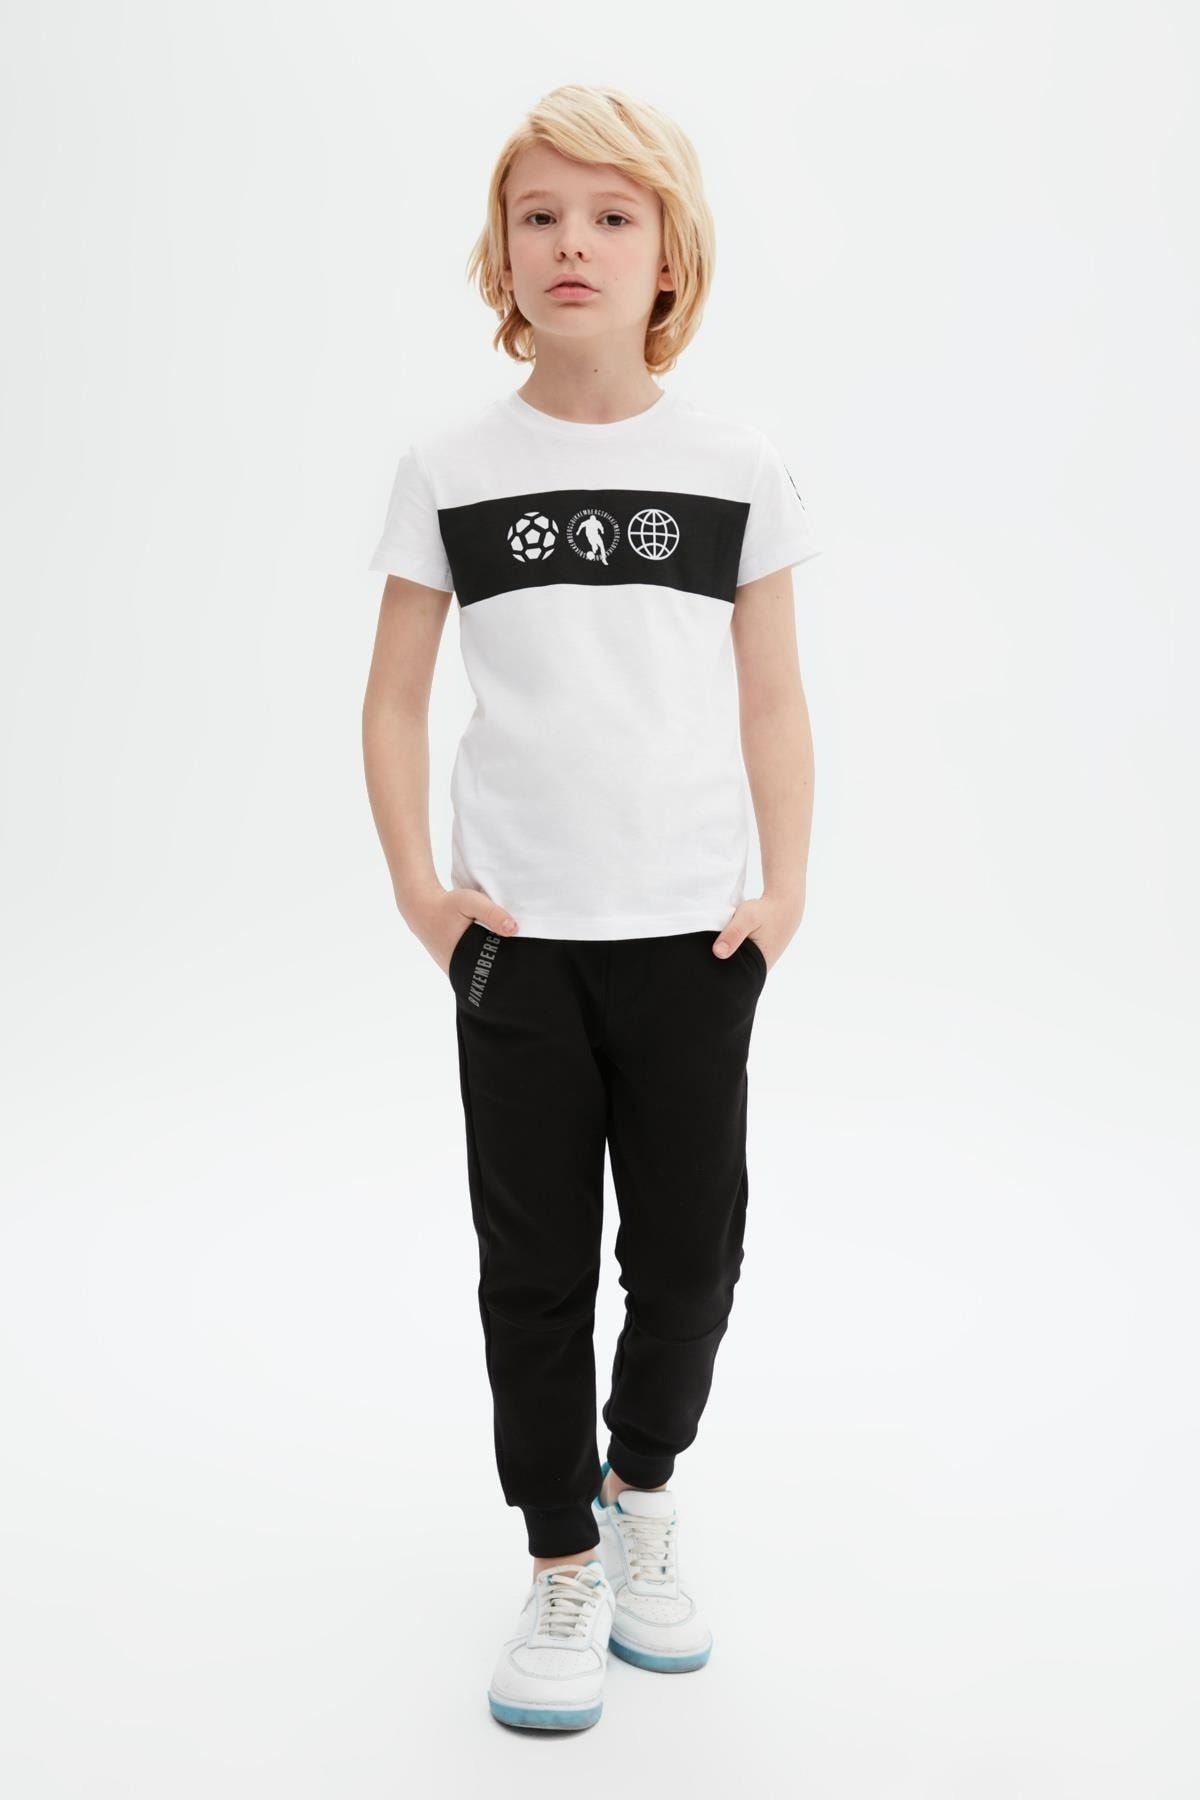 Bikkembergs Bg Store Erkek Çocuk Beyaz T-shirt 23ss0bk1545